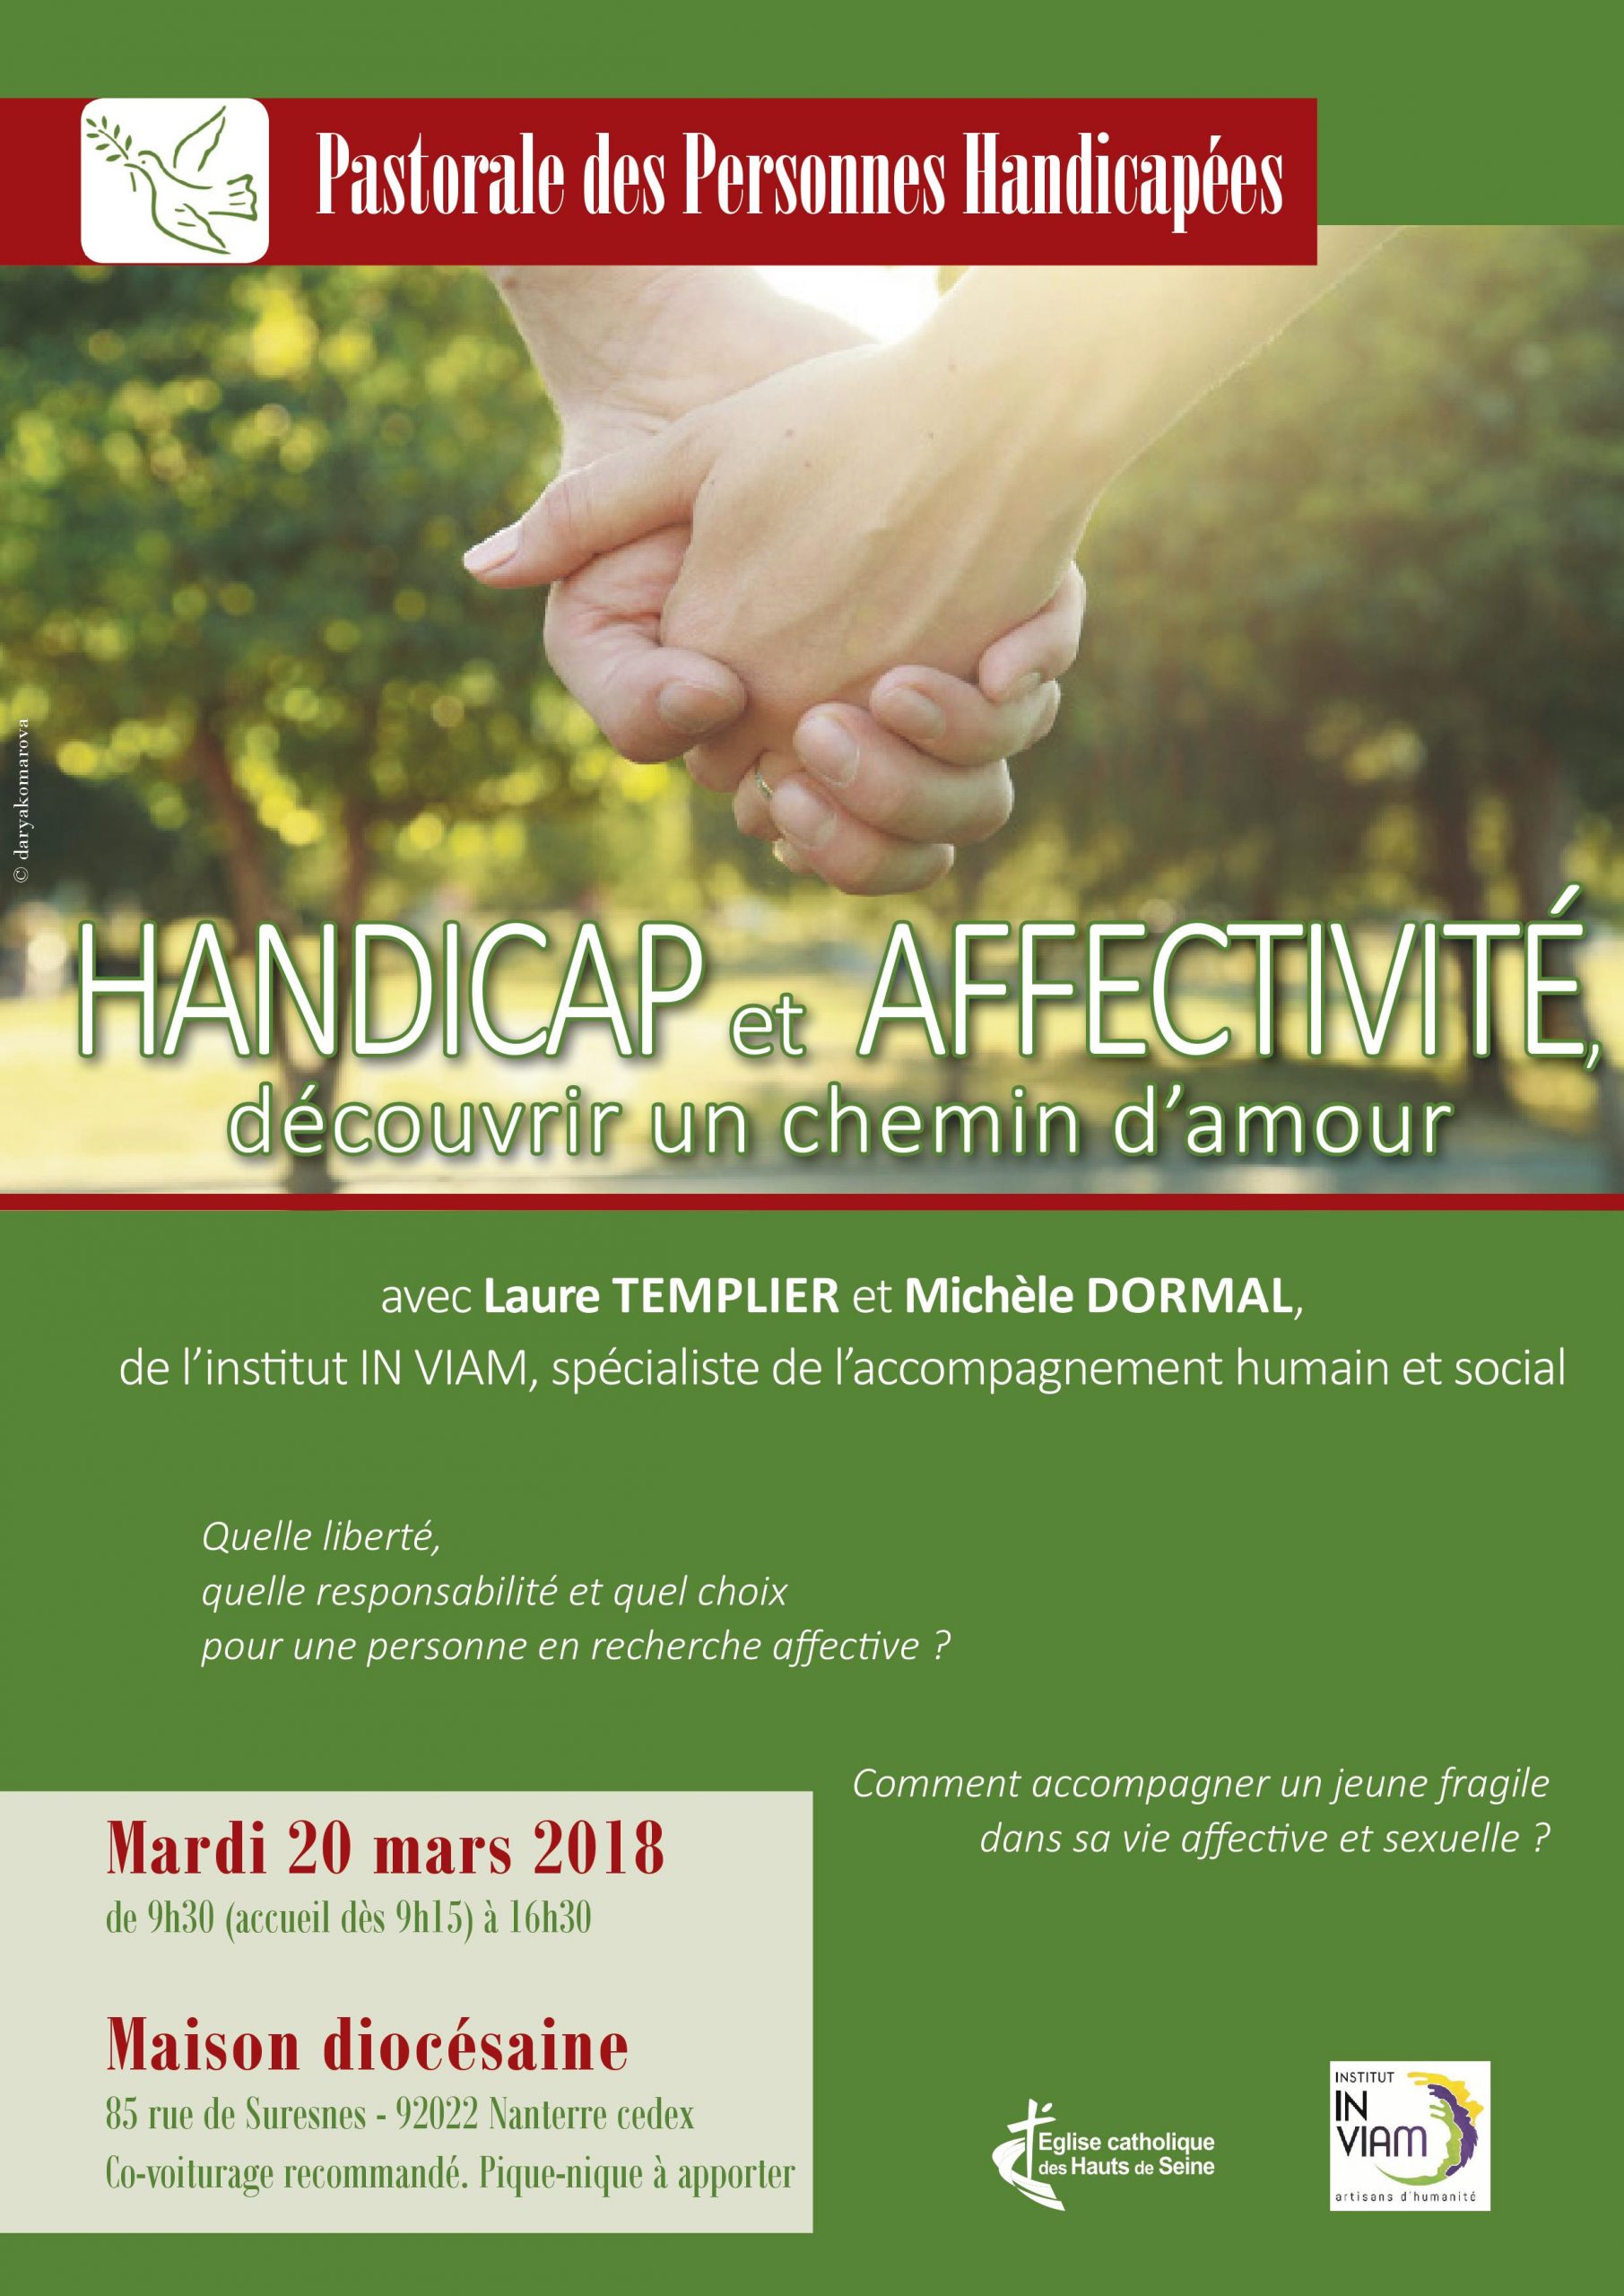 Handicap et affectivité – découvrir un chemin d’amour, le 20 mars à Nanterre (92)